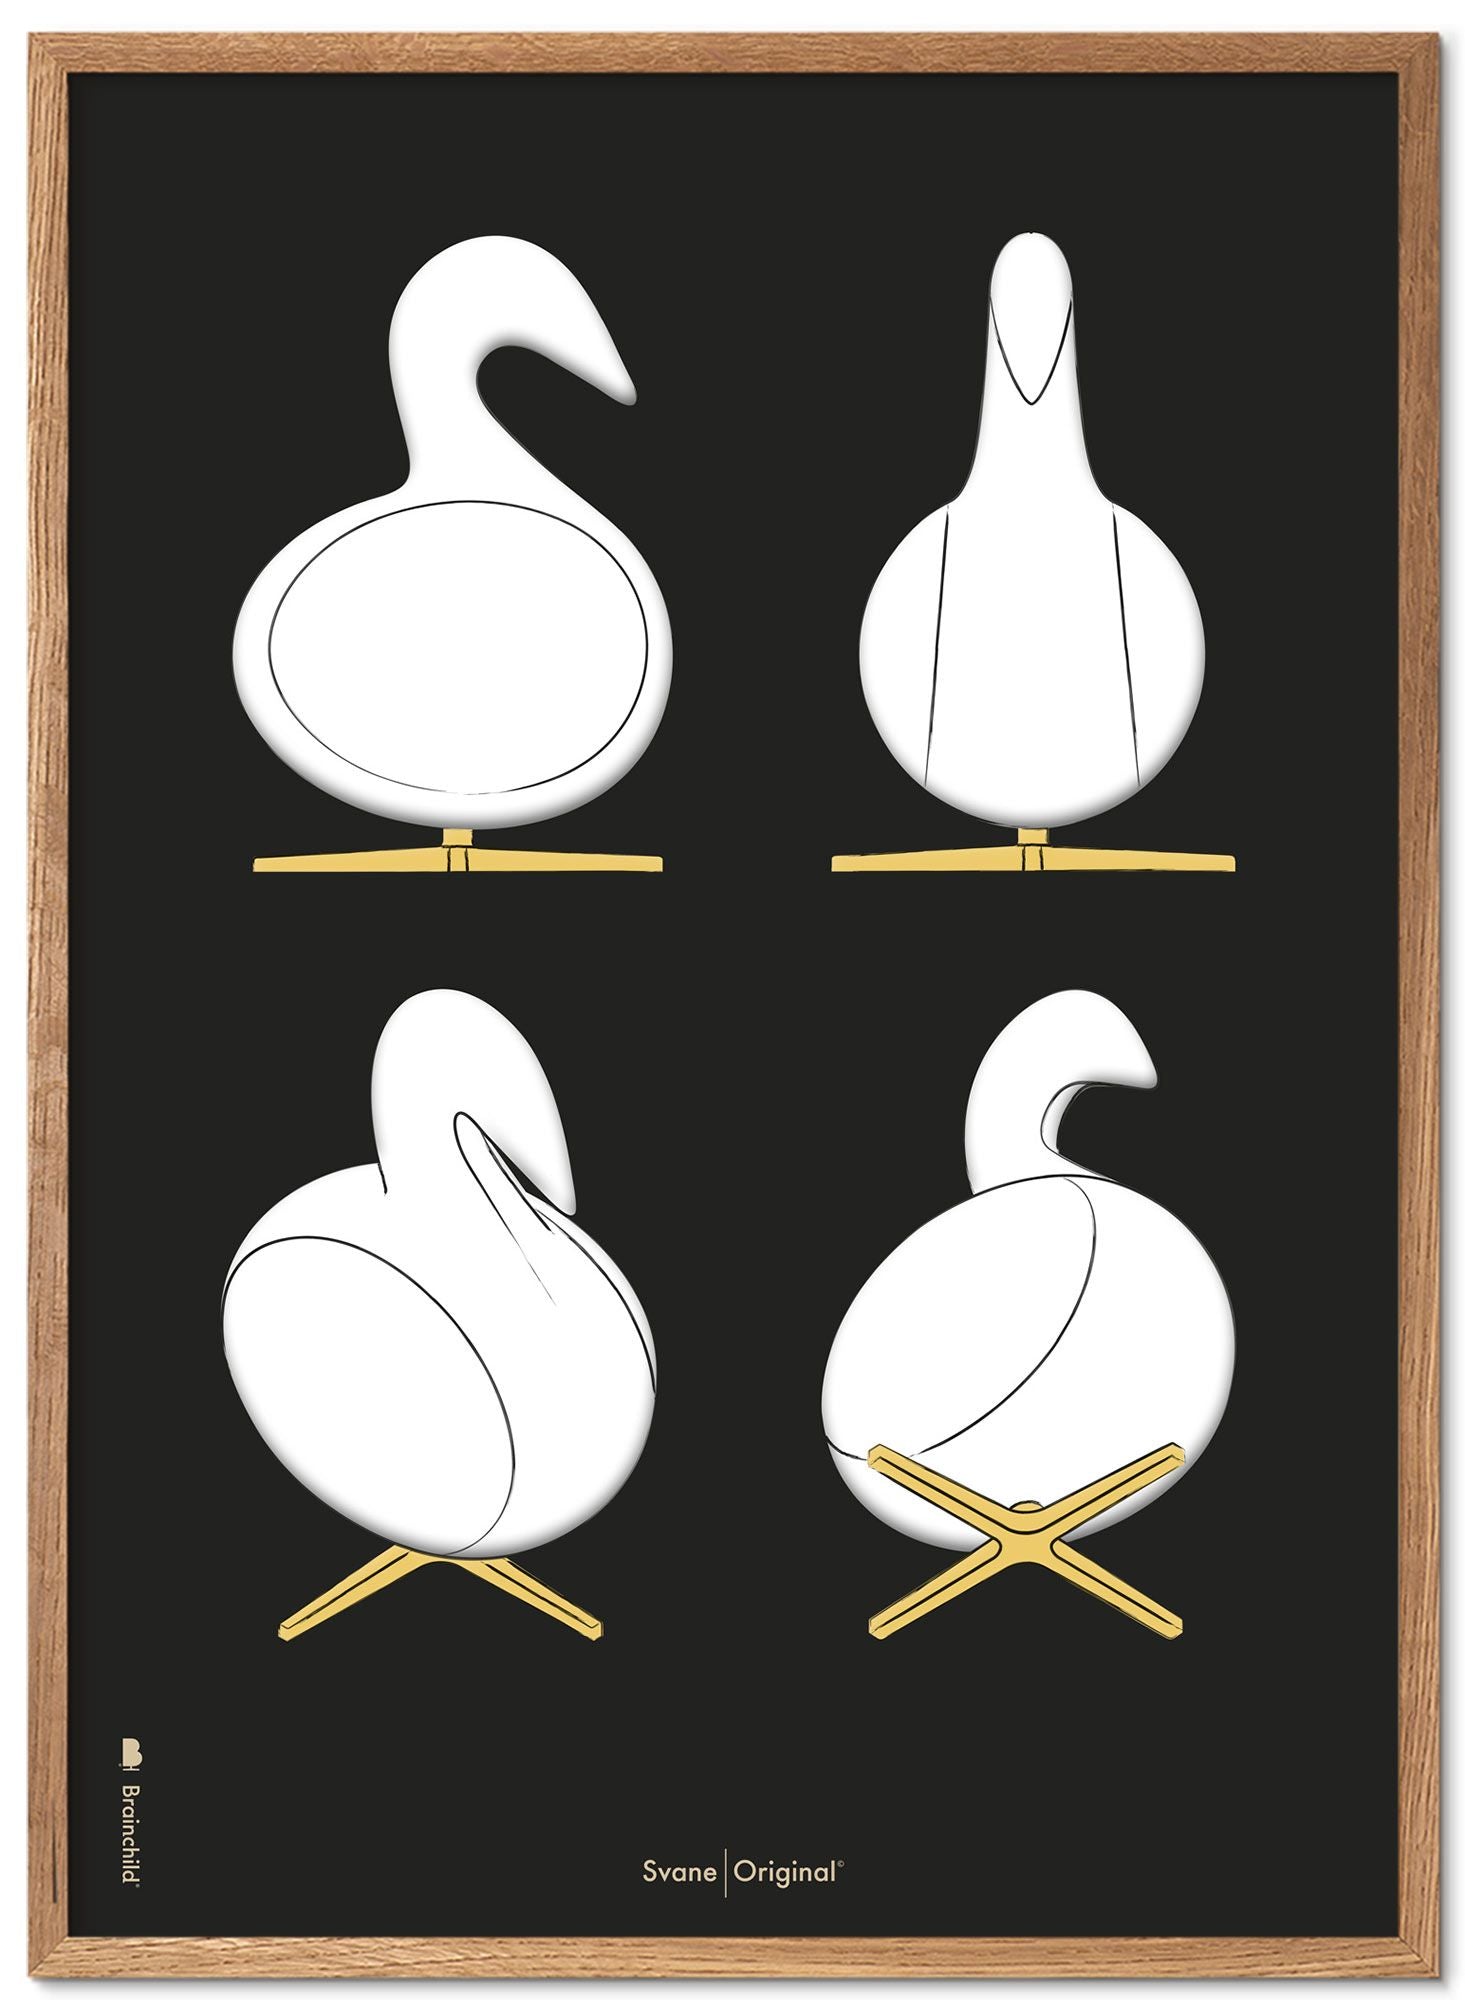 Brainchild Swan Design Sketches Poster Frame lavet af let træ 70x100 cm, sort baggrund